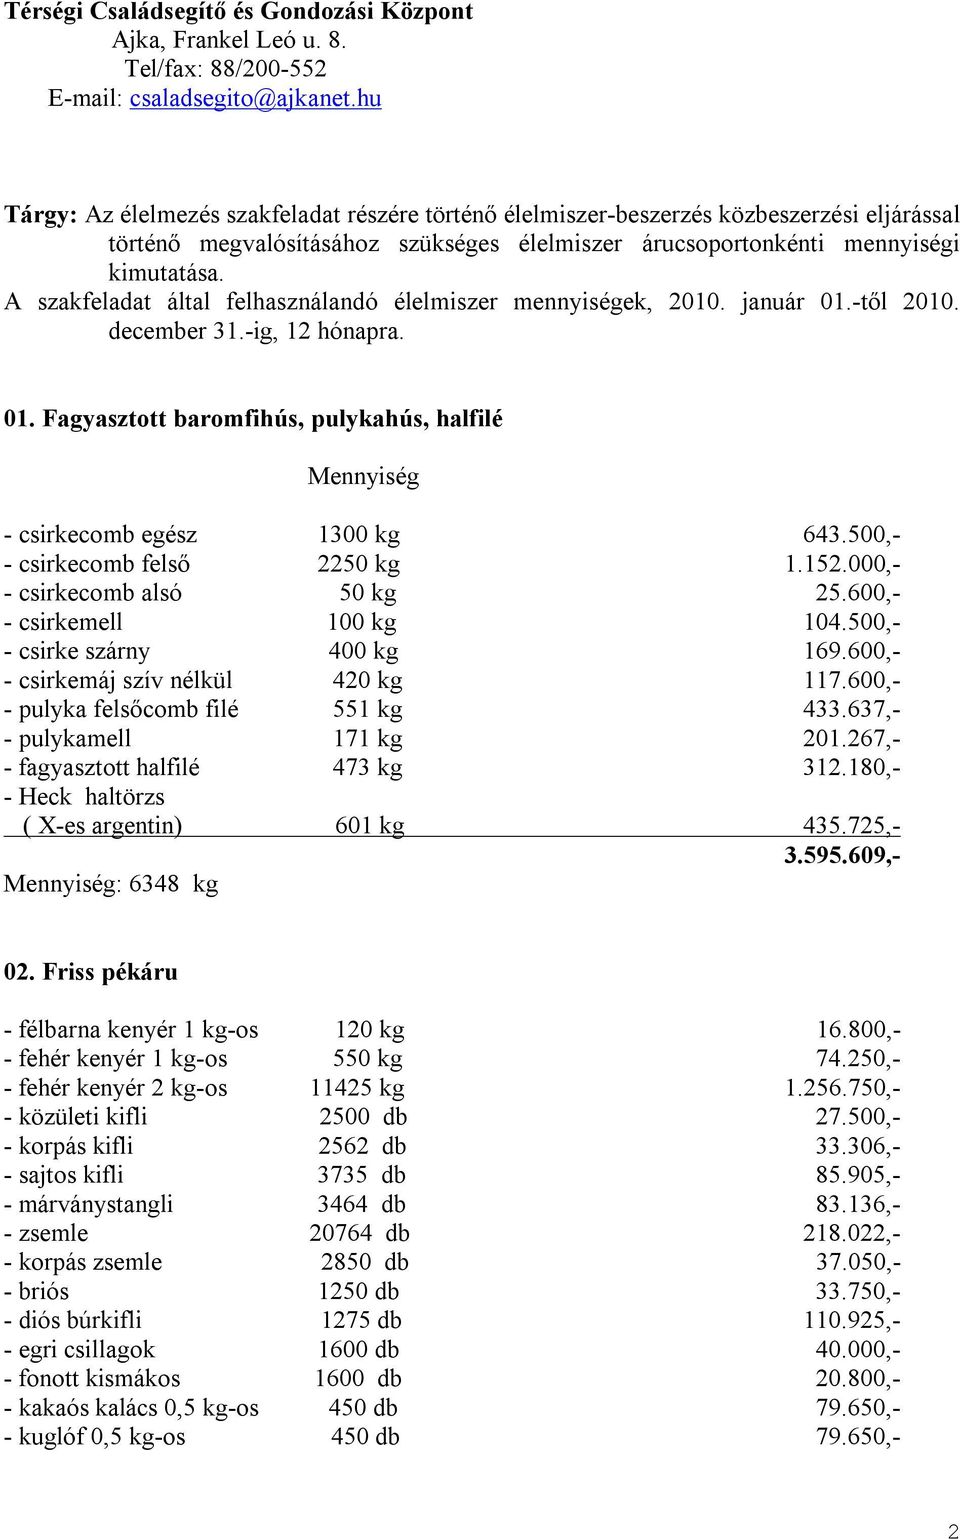 A szakfeladat által felhasználandó élelmiszer mennyiségek, 2010. január 01.-től 2010. december 31.-ig, 12 hónapra. 01. Fagyasztott baromfihús, pulykahús, halfilé Mennyiség - csirkecomb egész 1300 kg 643.